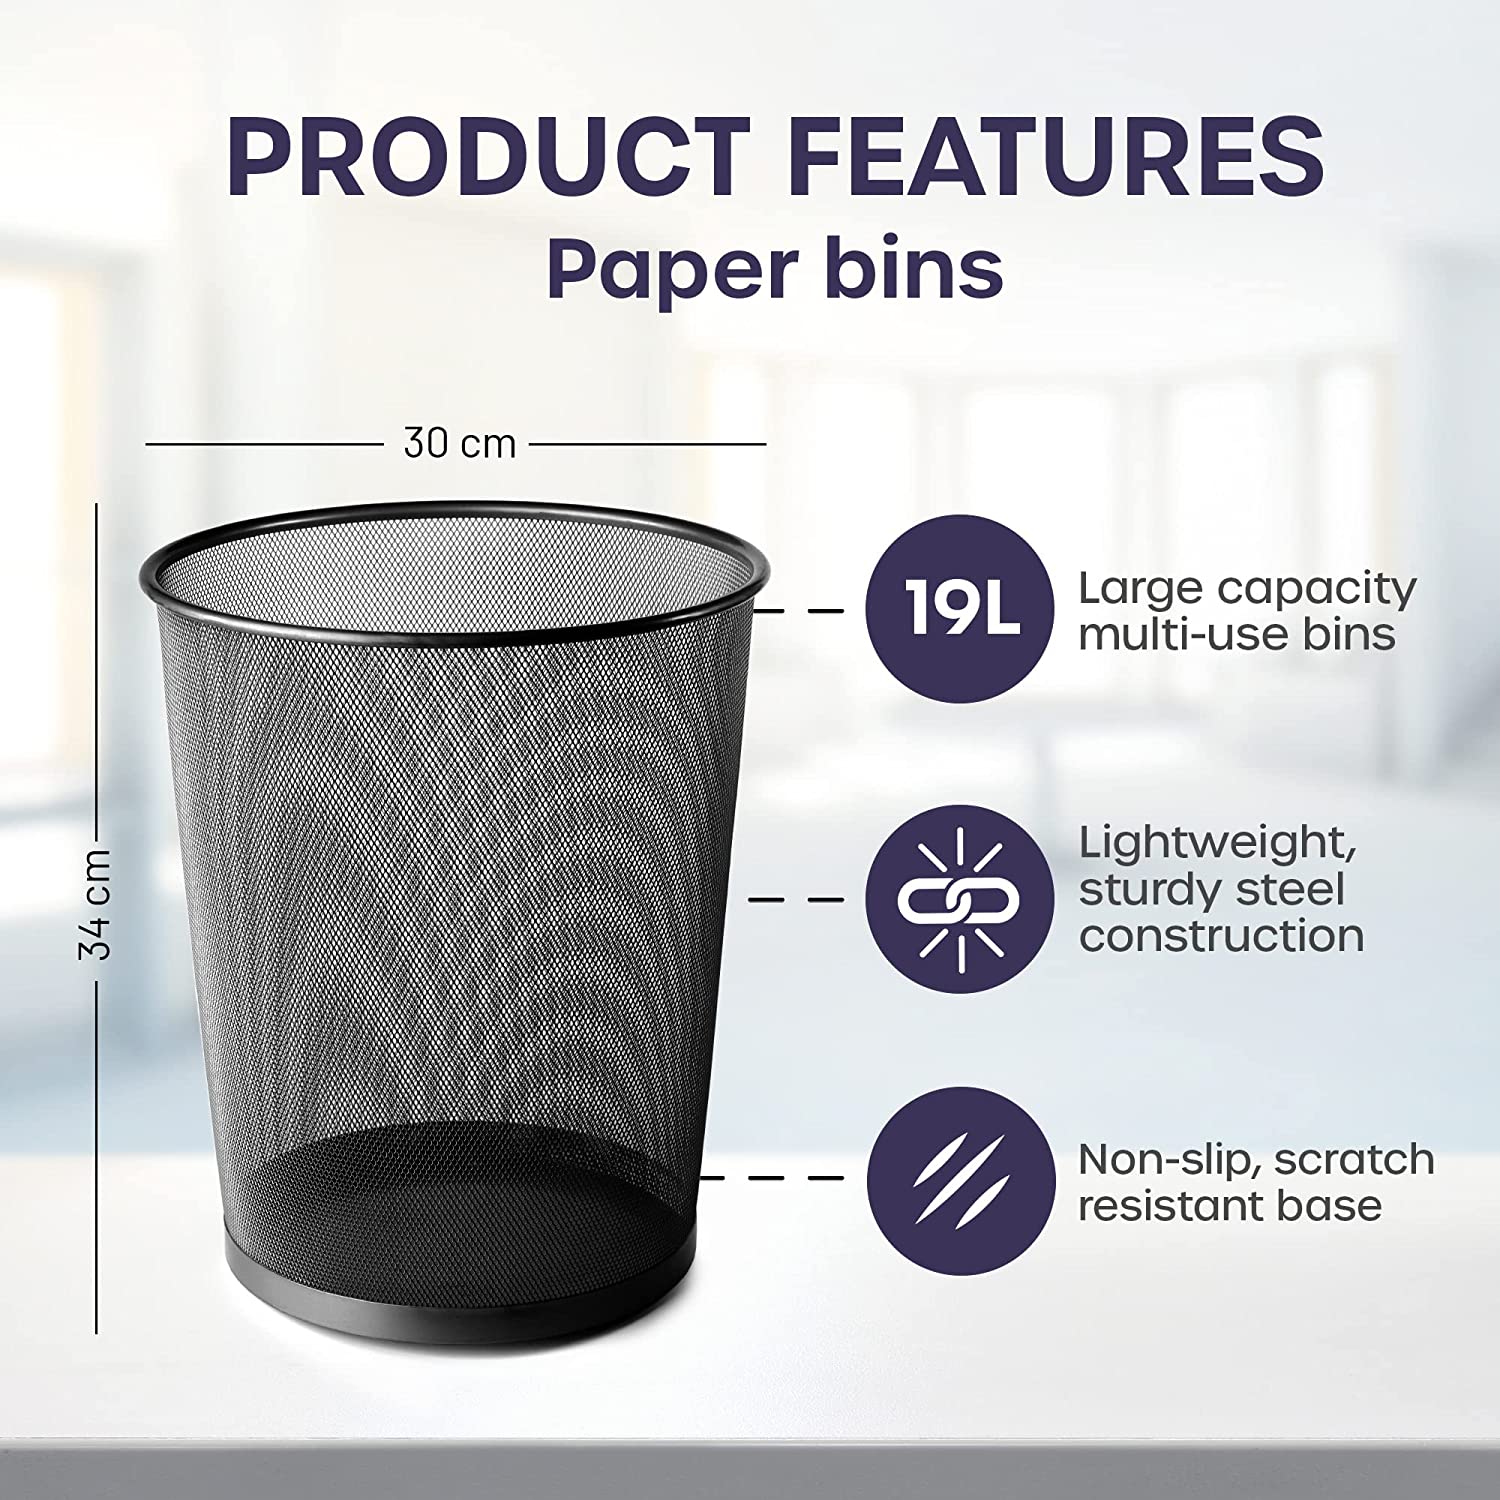 Mesh Waste Paper Bin - Lightweight & Durable